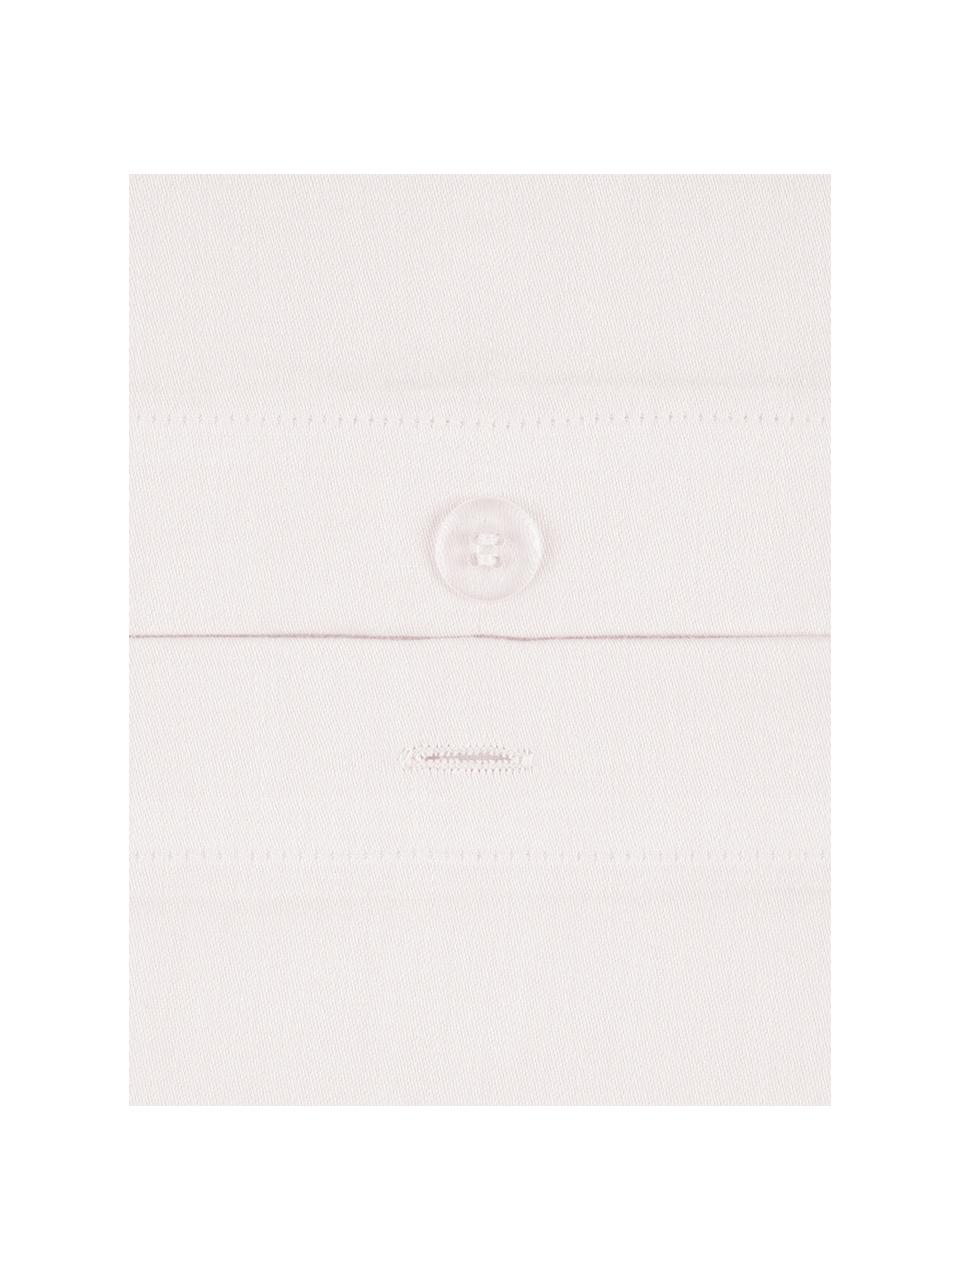 Baumwollsatin-Kissenbezug Comfort in Rosa, 65 x 100 cm, Webart: Satin, leicht glänzend Fa, Rosa, B 65 x L 100 cm